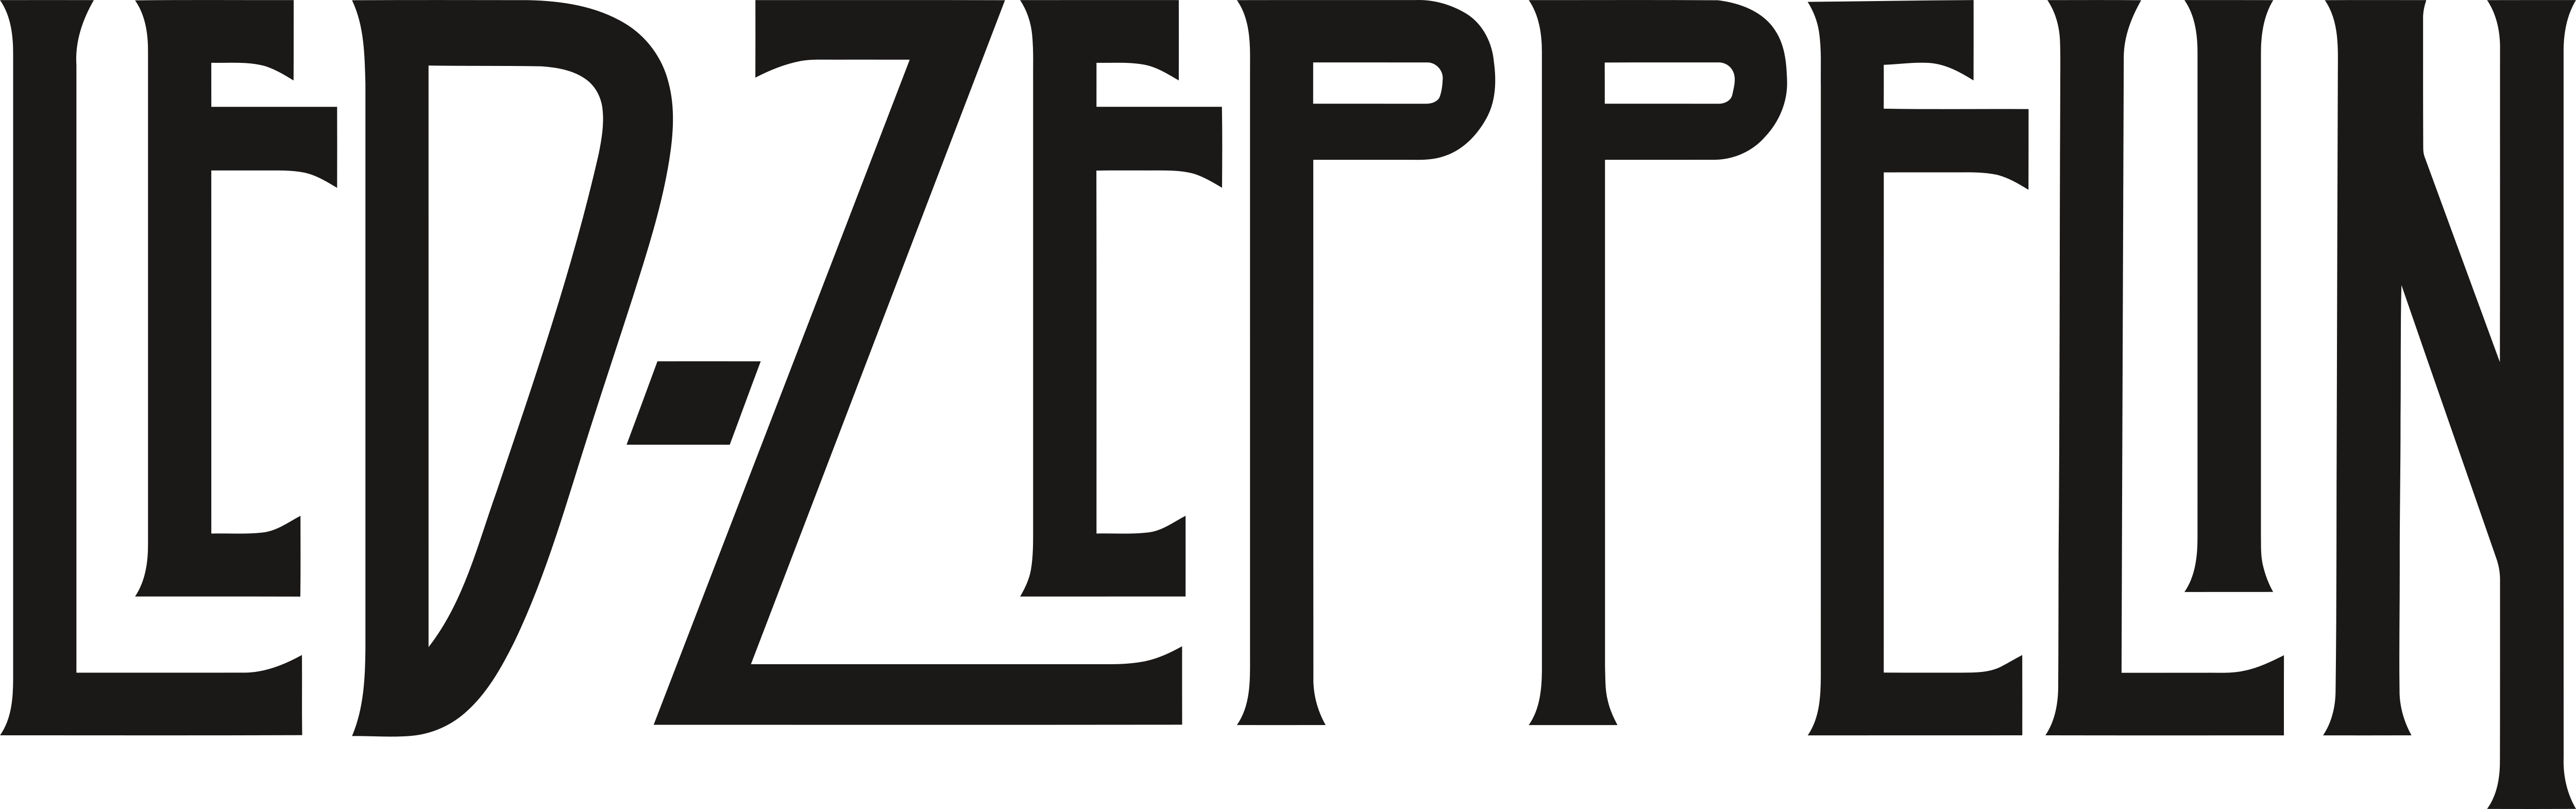 LED Zeppelin Album Logo